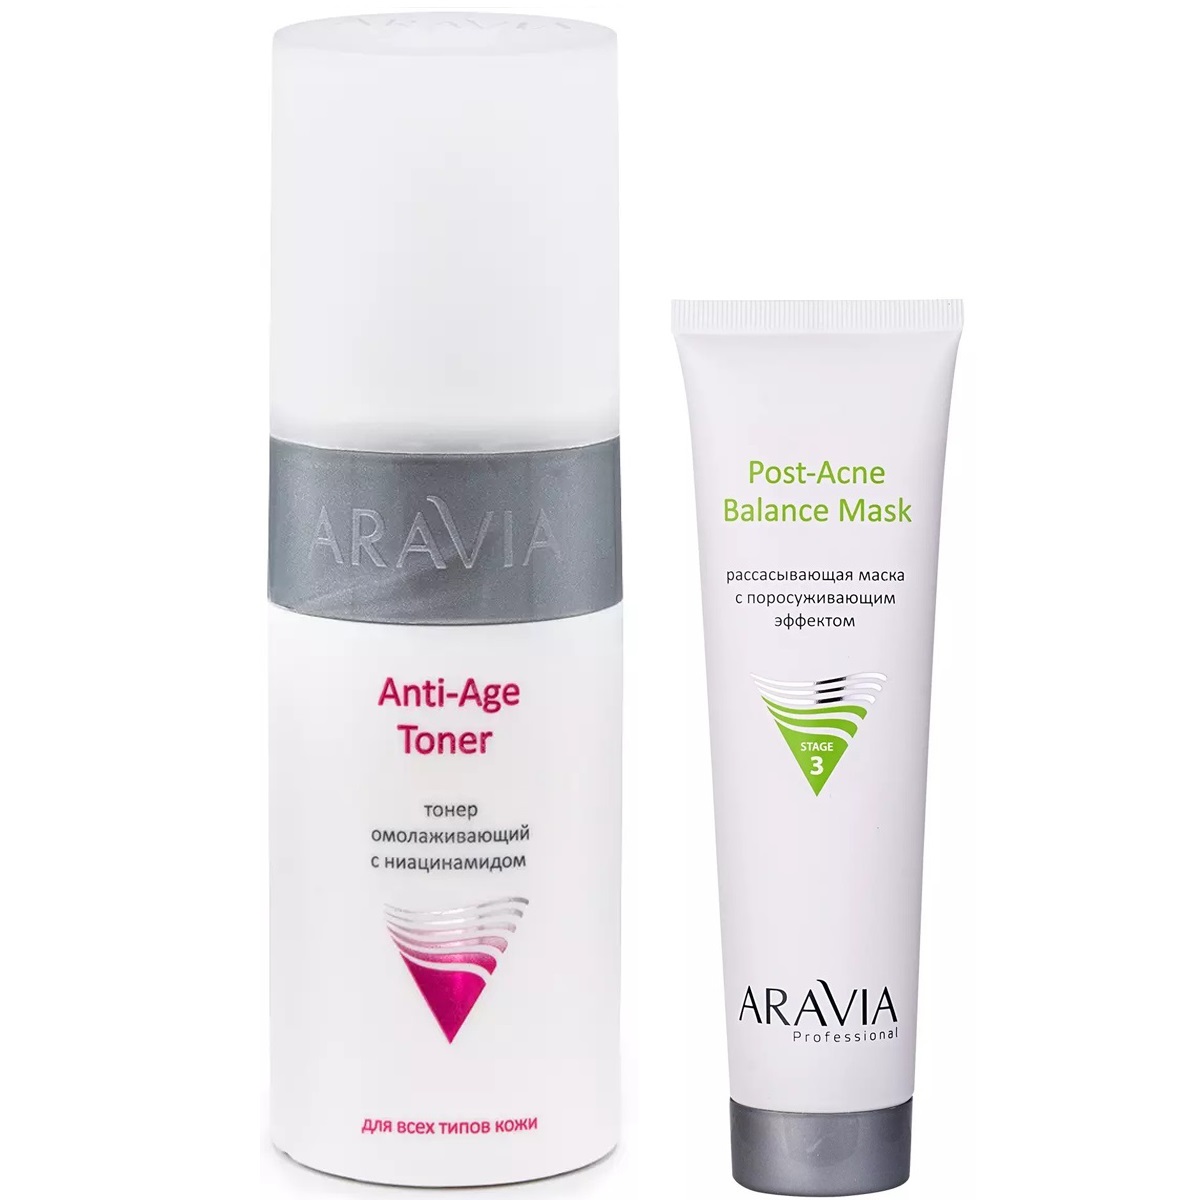 Aravia Professional Набор для ухода за кожей лица: маска, 100 мл + тонер, 150 мл (Aravia Professional, Уход за лицом) цена и фото